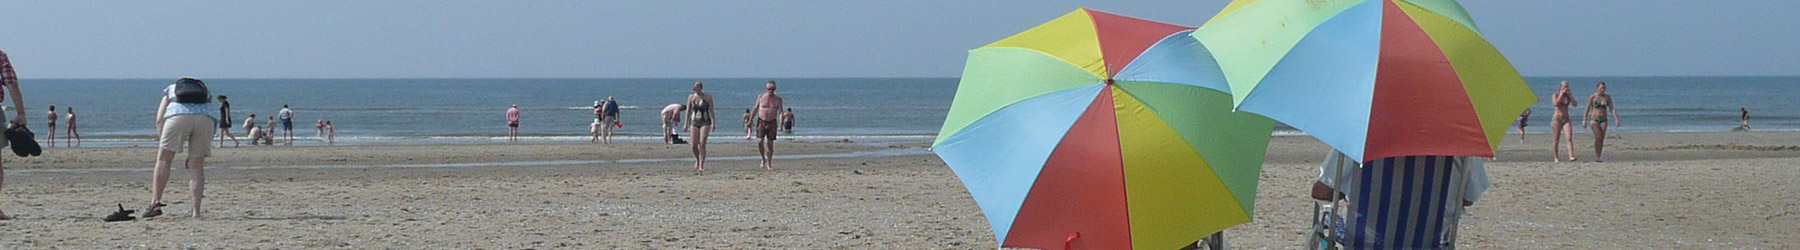 test parasols